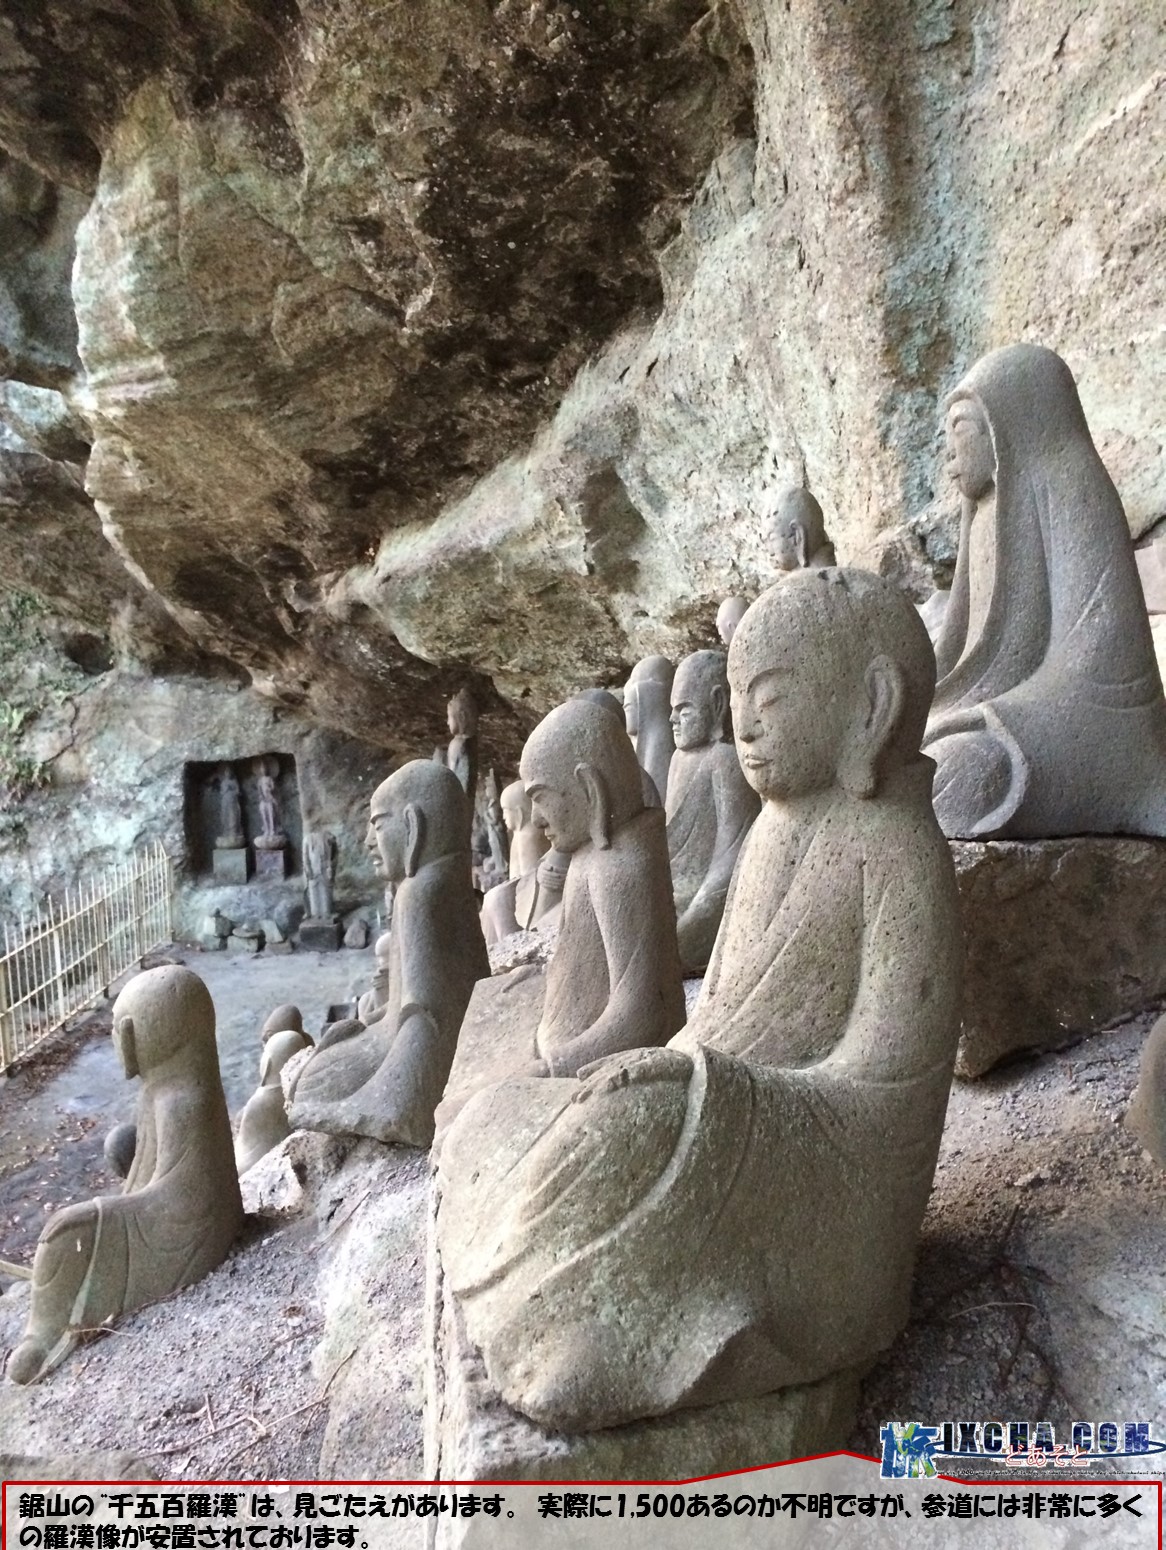 鋸山の“千五百羅漢”は、見ごたえがあります。　実際に1,500あるのか不明ですが、参道には非常に多くの羅漢像が安置されております。 